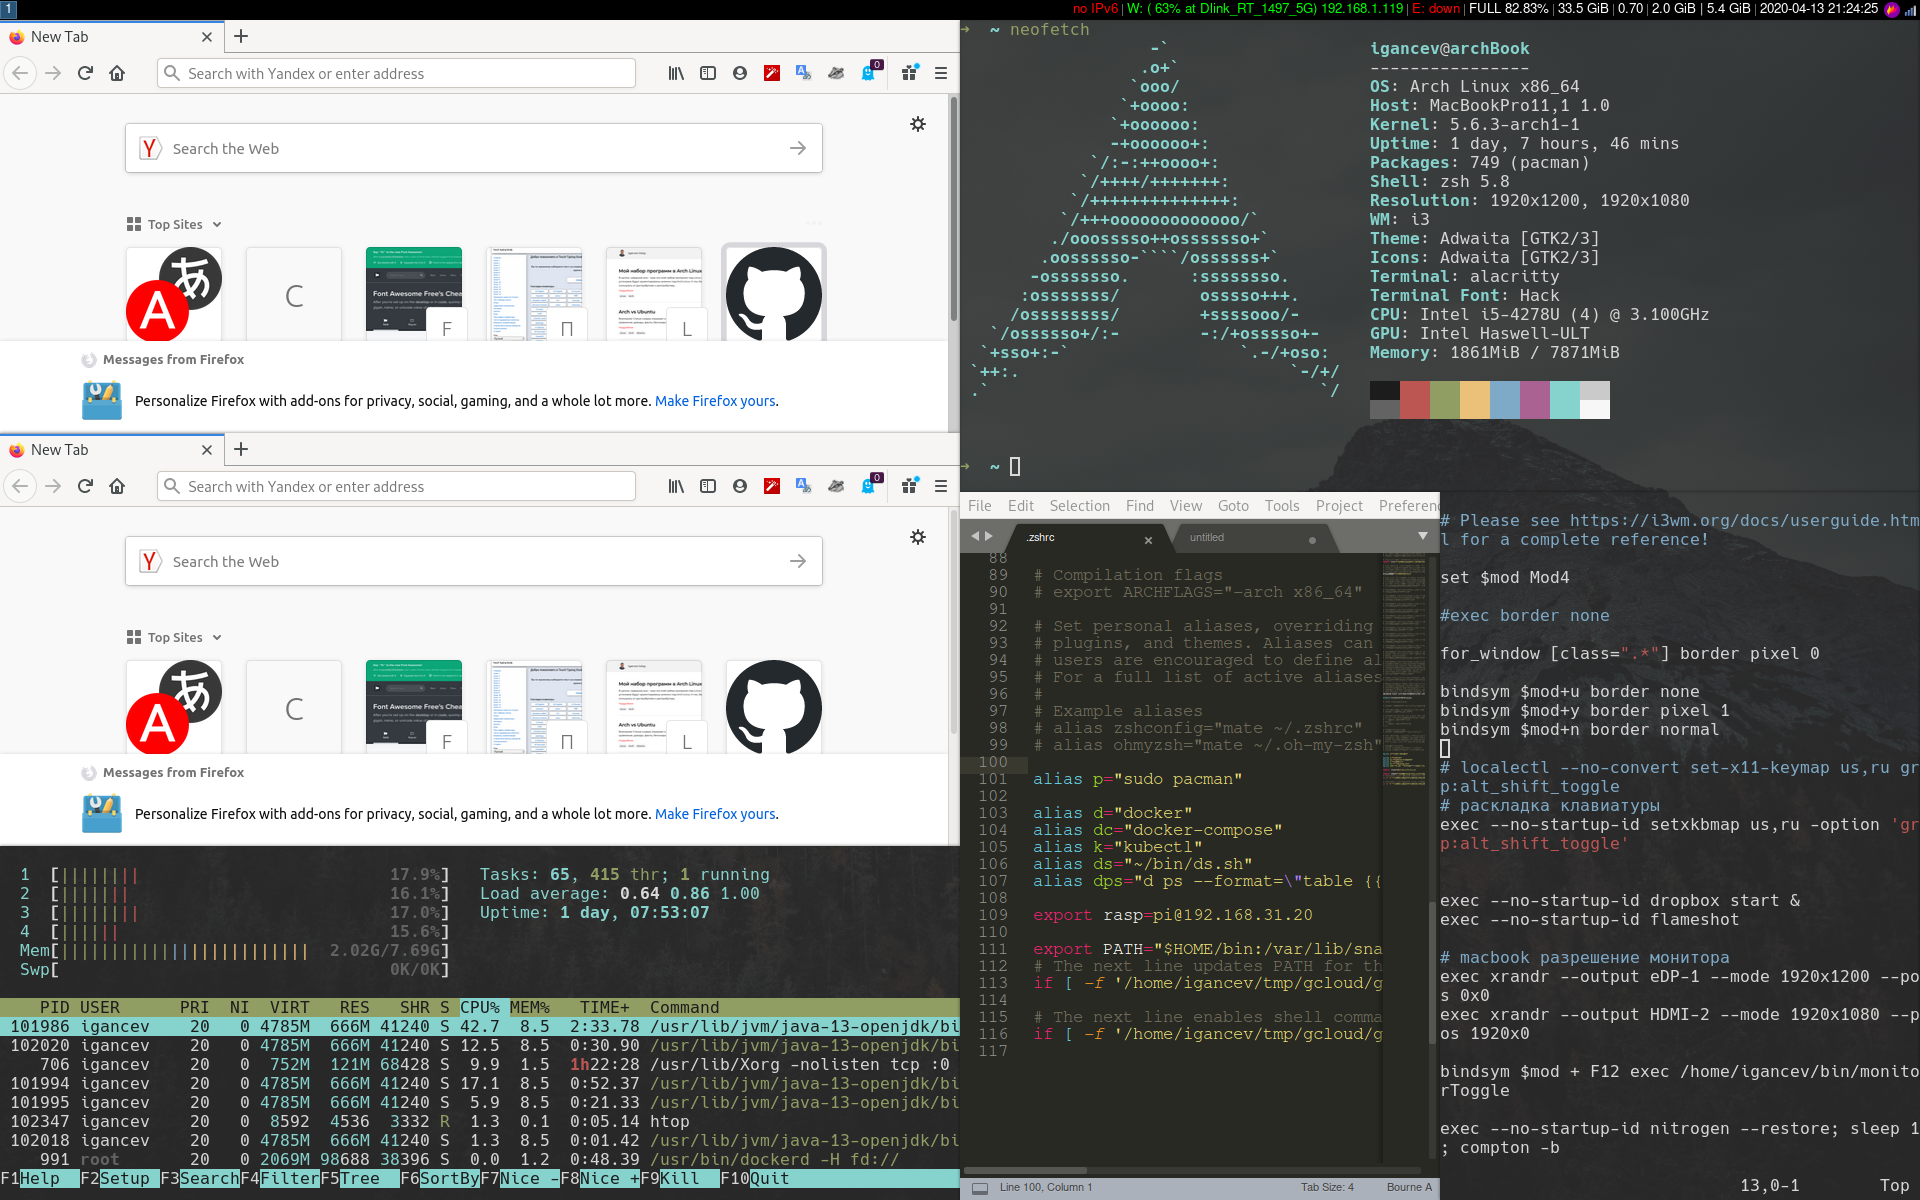 Скриншот экрана оконного менеджера i3wm с шестью окнами различных открытых программ